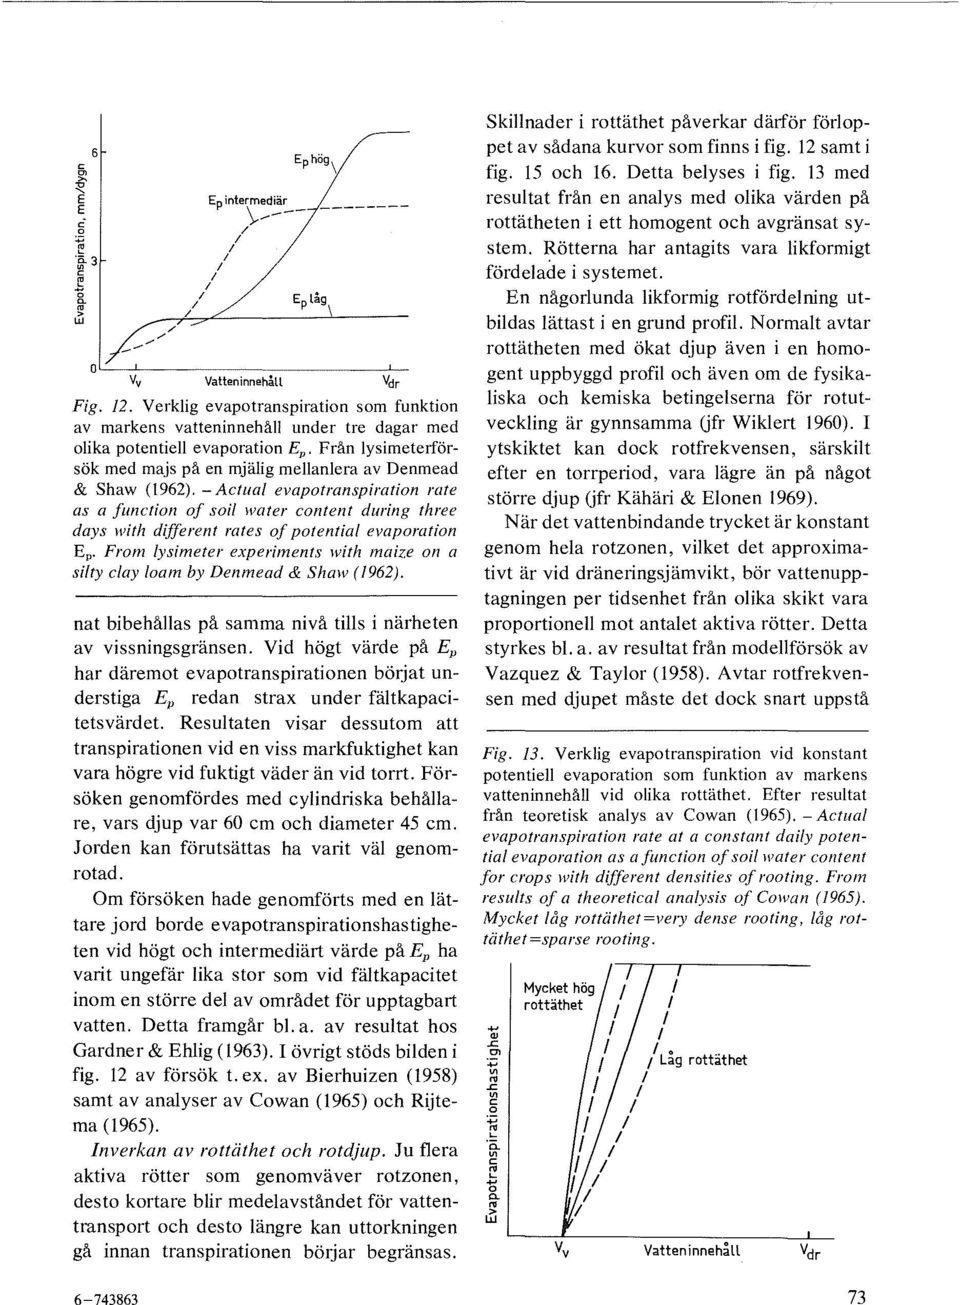 Frm ysimeter experiments with maize n a si/ty cay am by Denmead & Shaw (1962). nat bibehåas på samma nivå tis i närheten av vissningsgränsen.